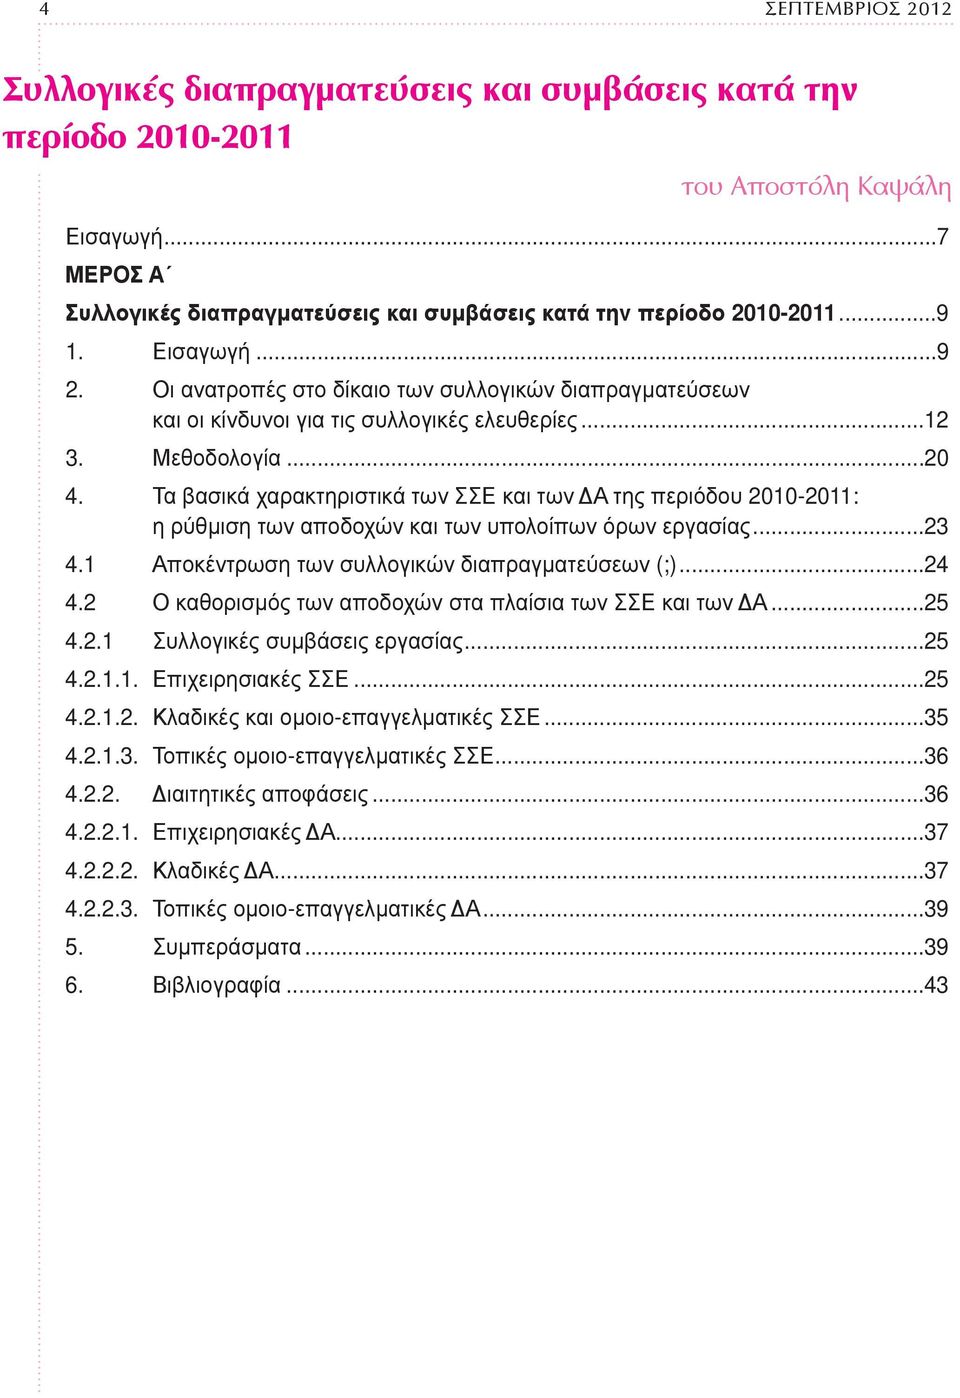 Τα βασικά χαρακτηριστικά των ΣΣΕ και των ΔΑ της περιόδου 2010-2011: η ρύθμιση των αποδοχών και των υπολοίπων όρων εργασίας...23 4.1 Αποκέντρωση των συλλογικών διαπραγματεύσεων (;)...24 4.